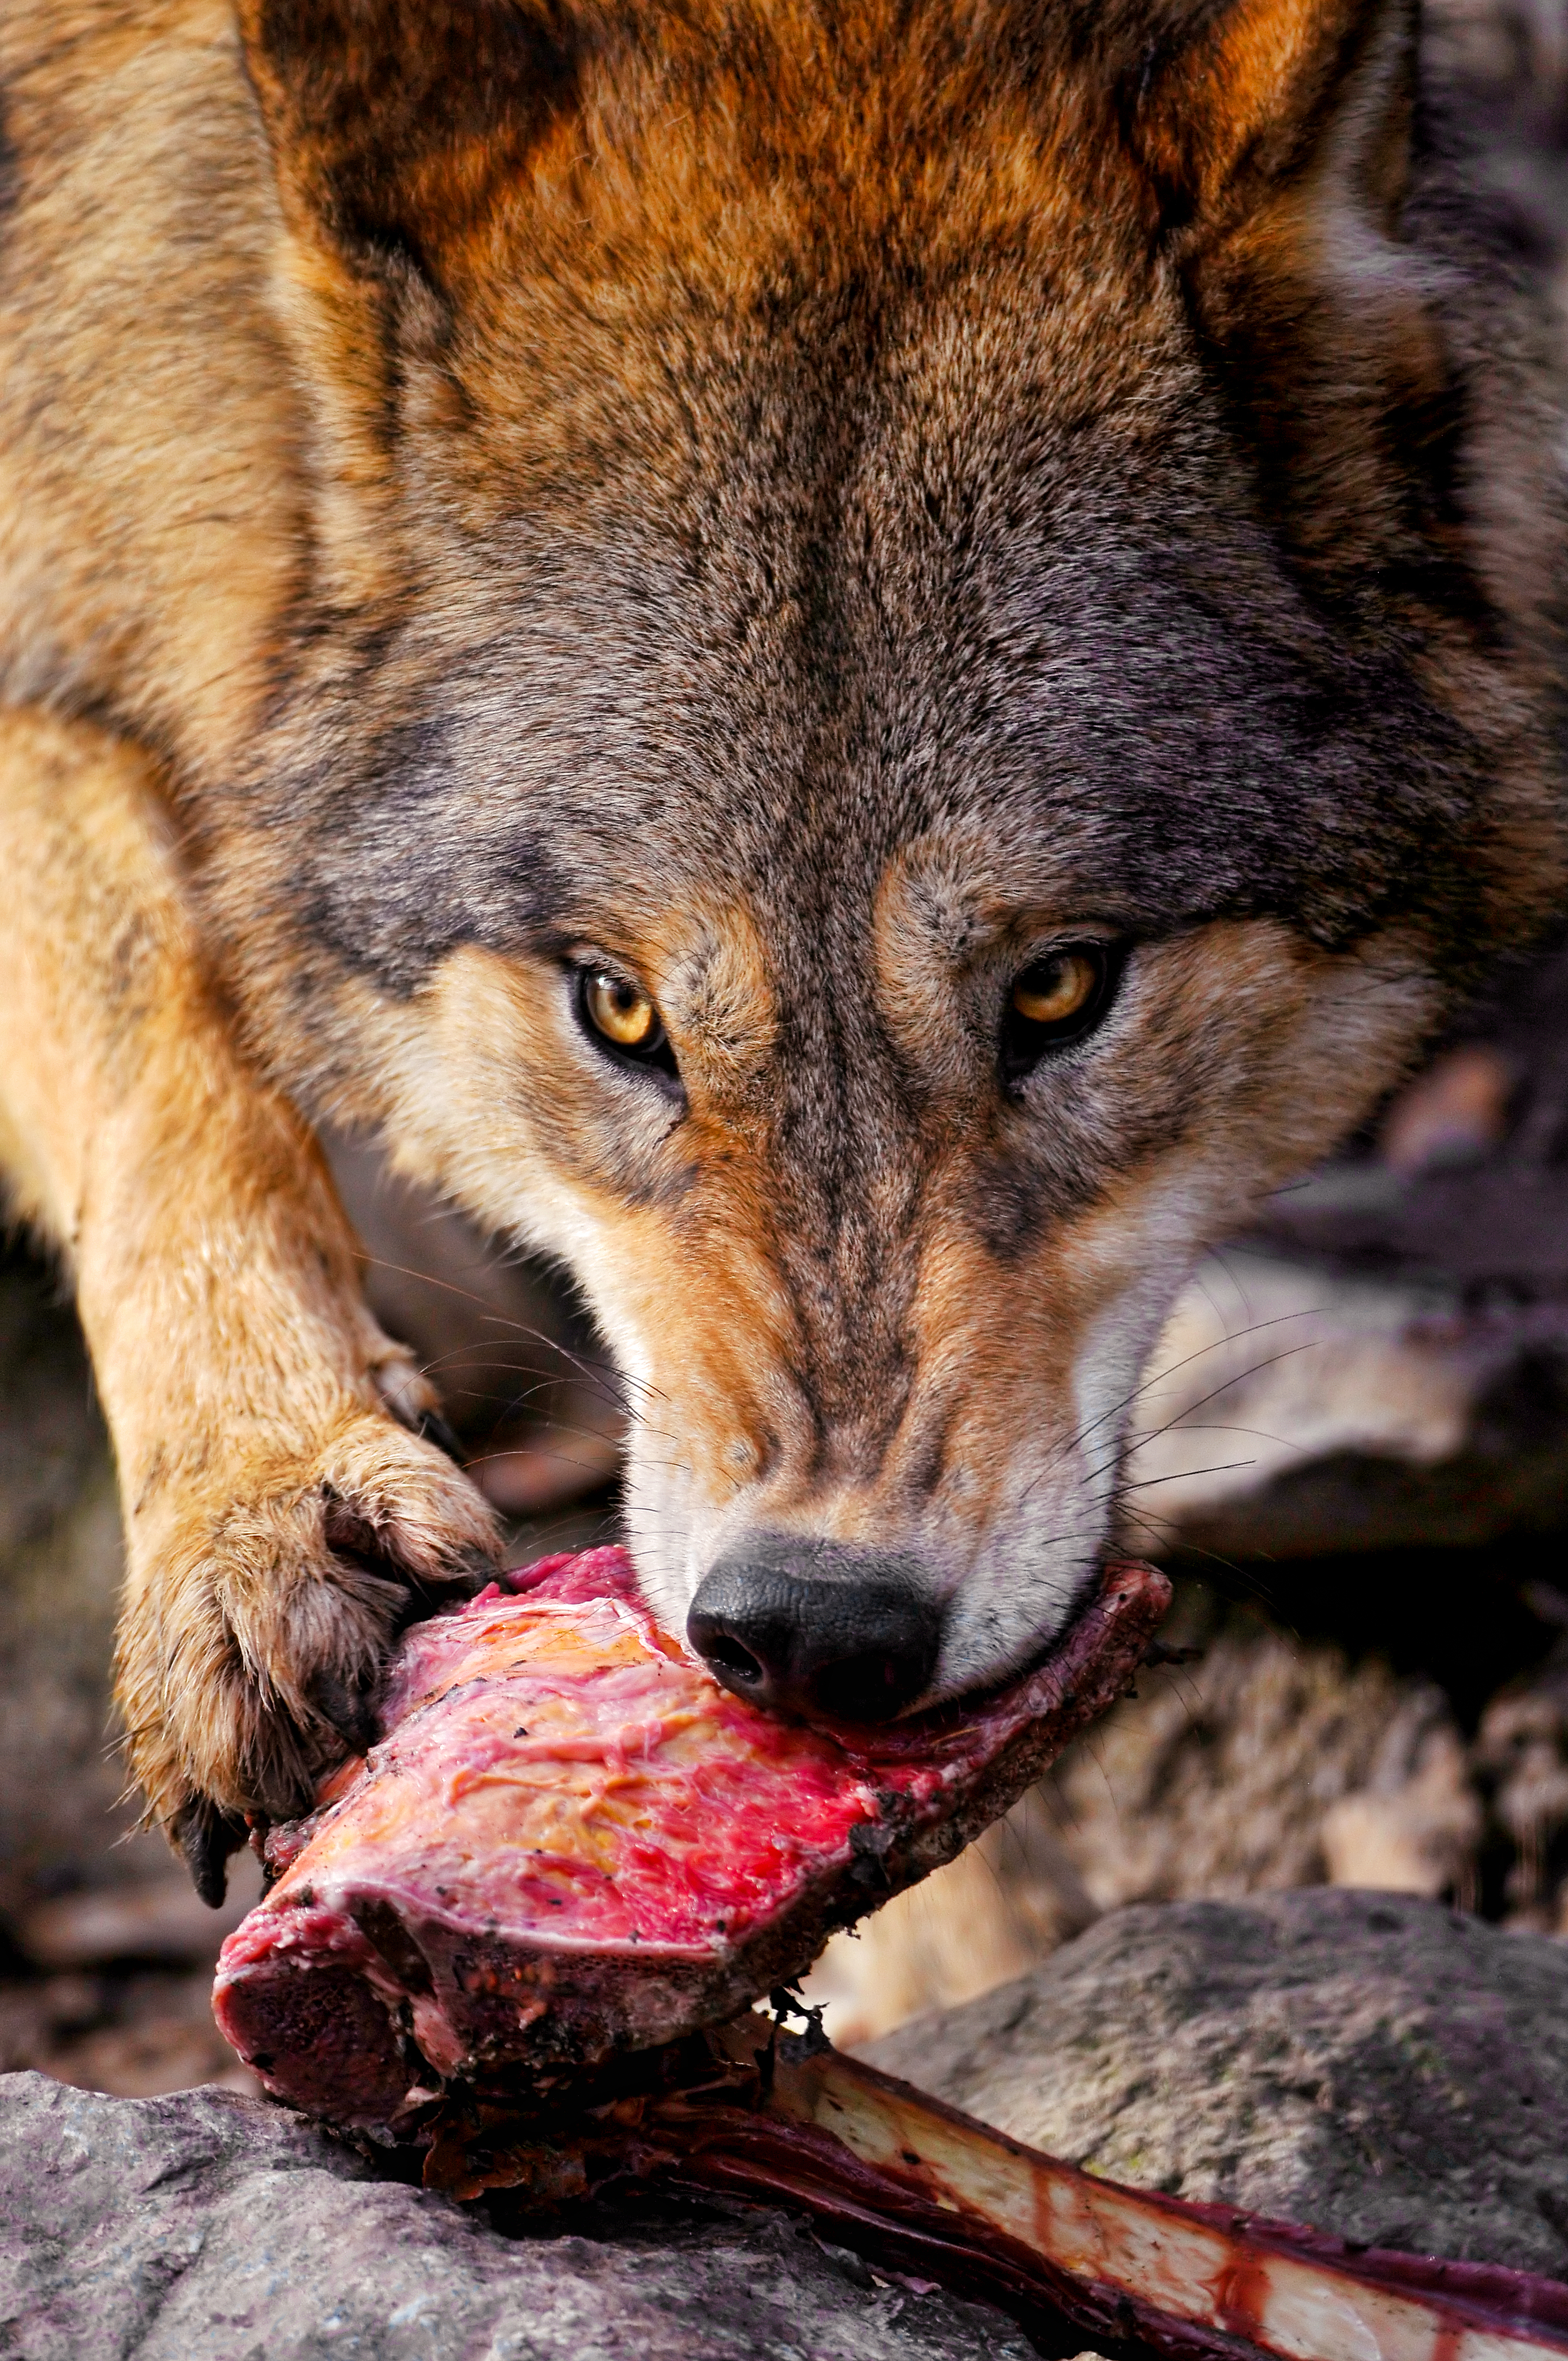 フリー写真素材 動物 哺乳類 イヌ科 狼 オオカミ 怒る 画像素材なら 無料 フリー写真素材のフリーフォト